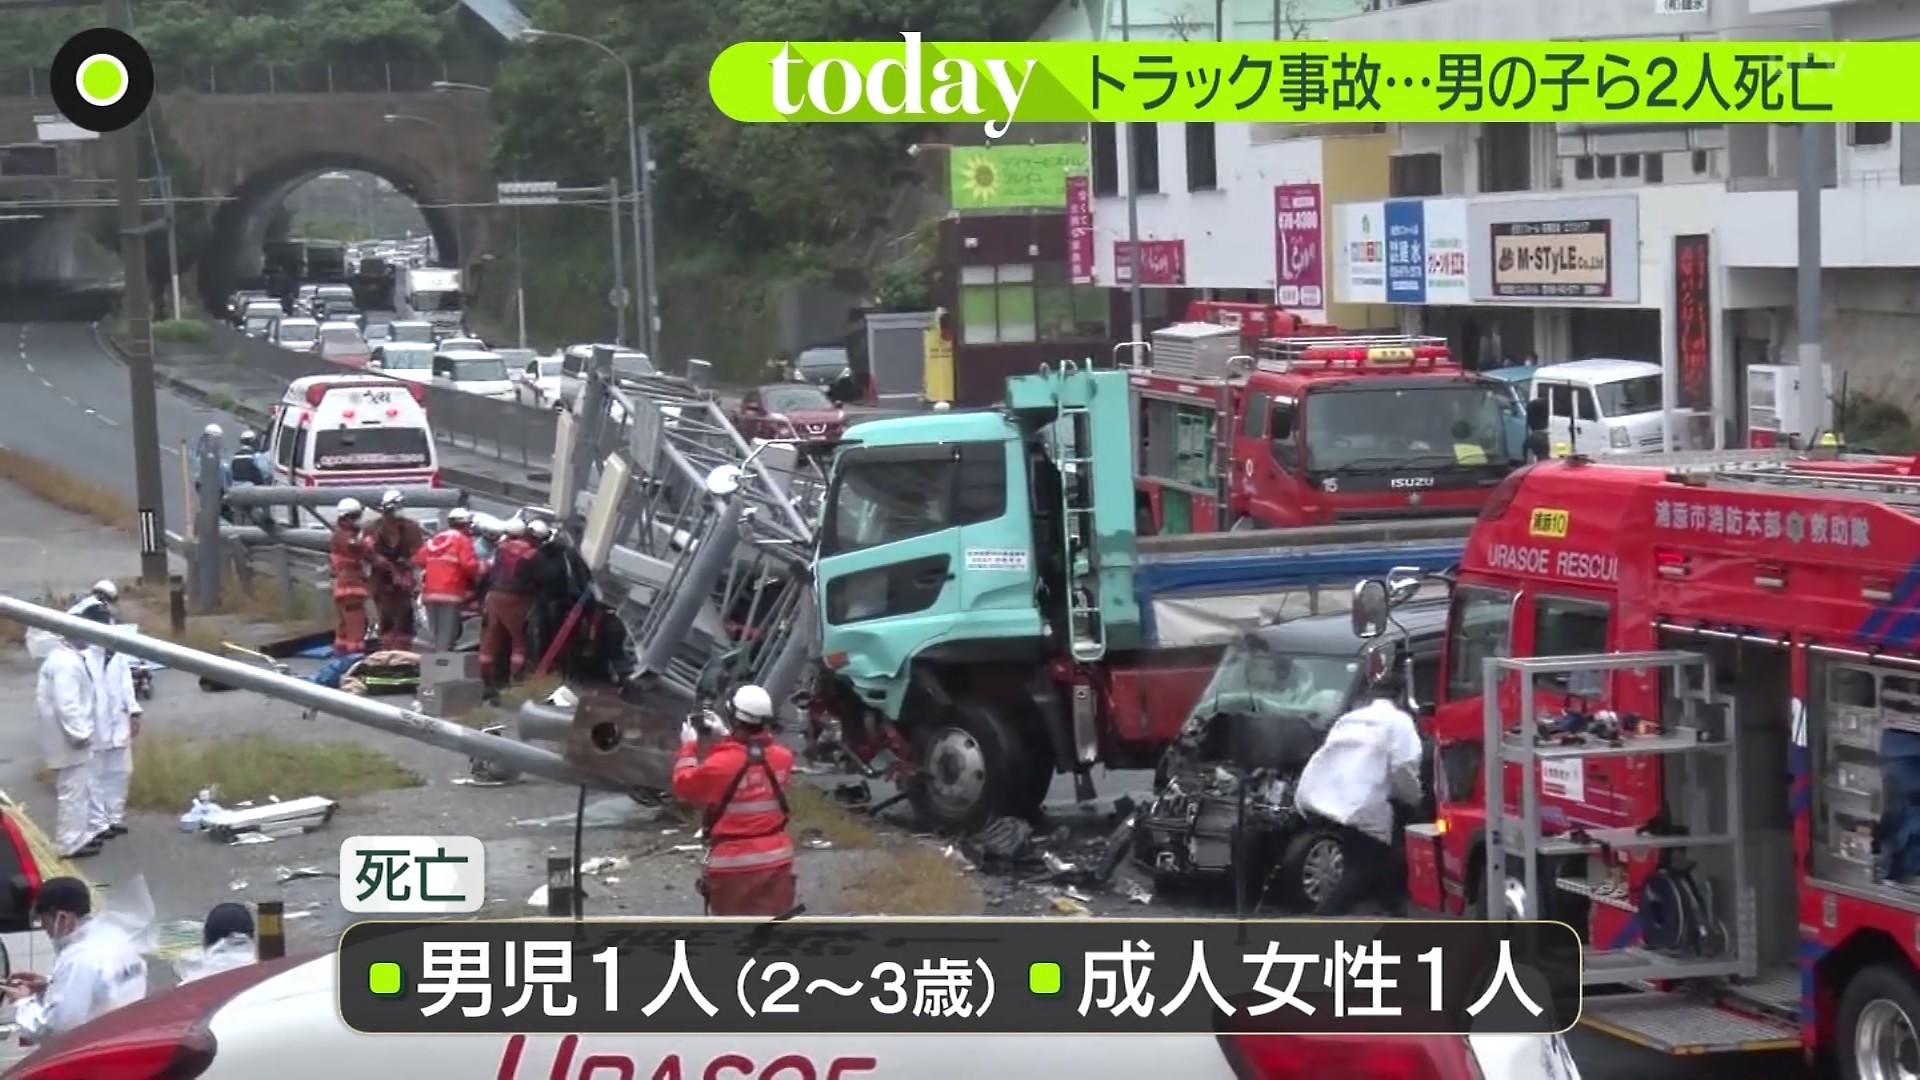 事故 沖縄 浦添 浦添の多重事故、ダンプ運転手「記憶ない」 速度記録に不備